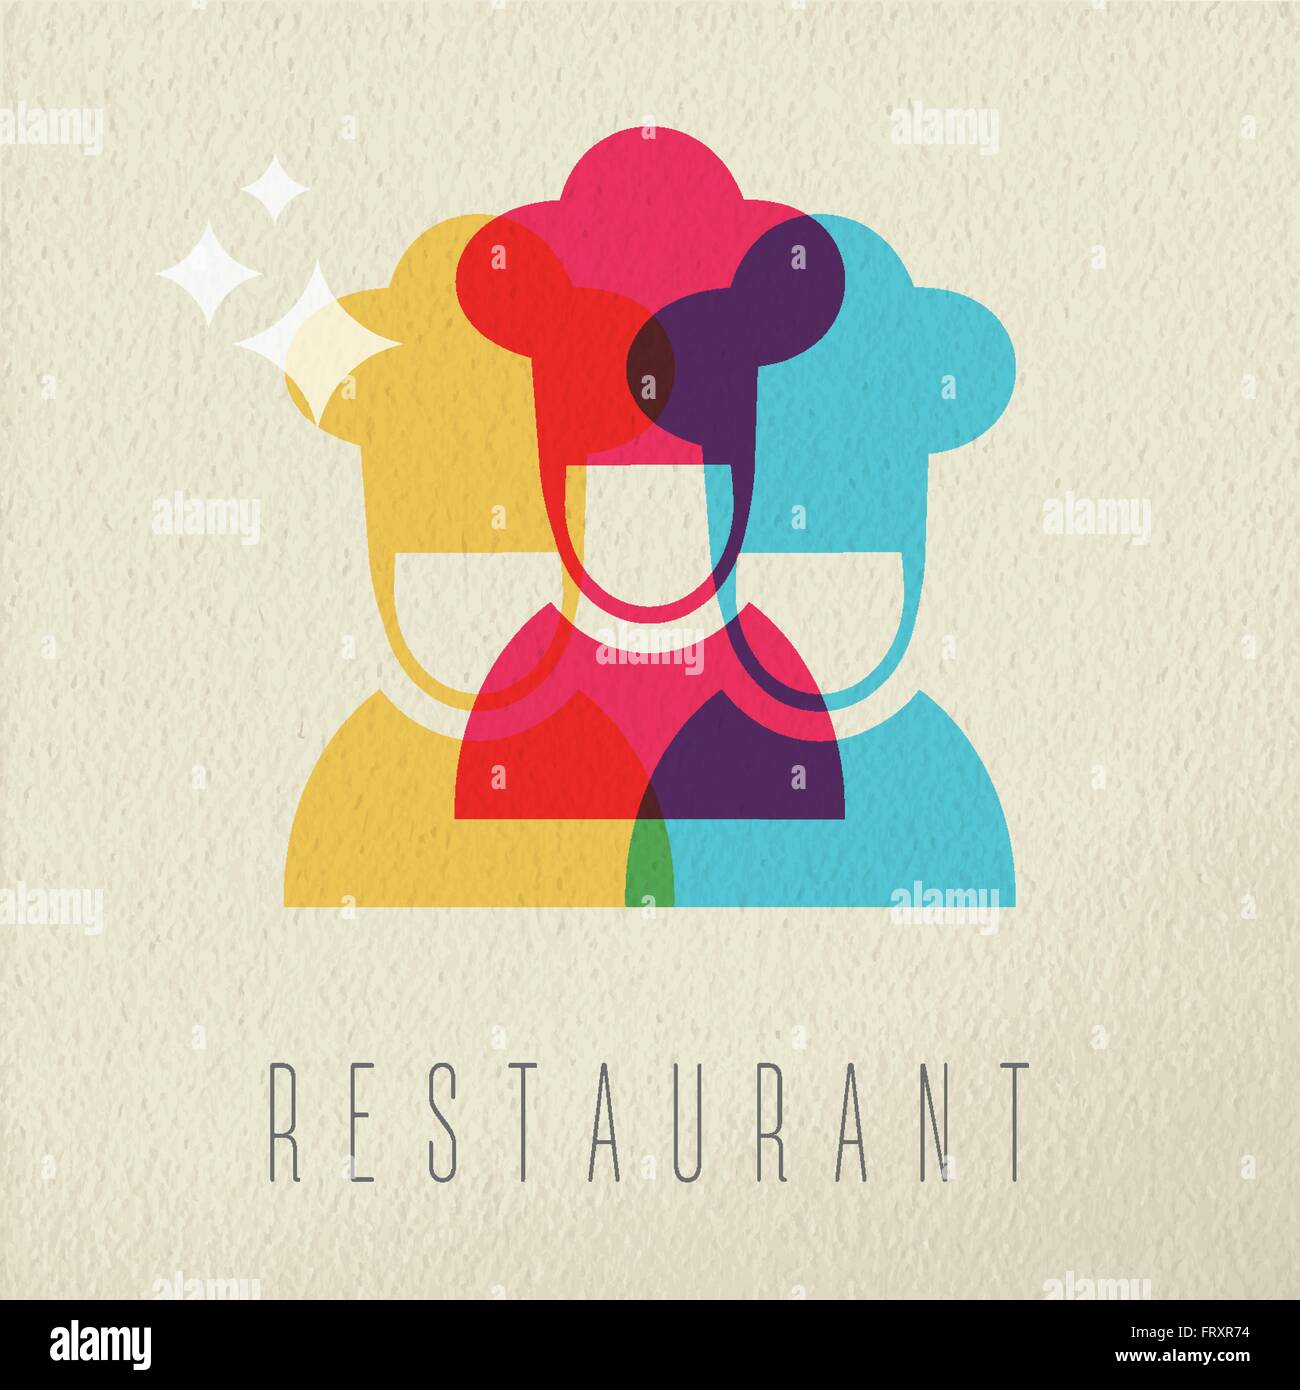 Il cibo del ristorante era concetto icona, illustrazione di chef di cucina con hat uniforme in stile a colori su sfondo di texture. EPS10 vettore. Illustrazione Vettoriale